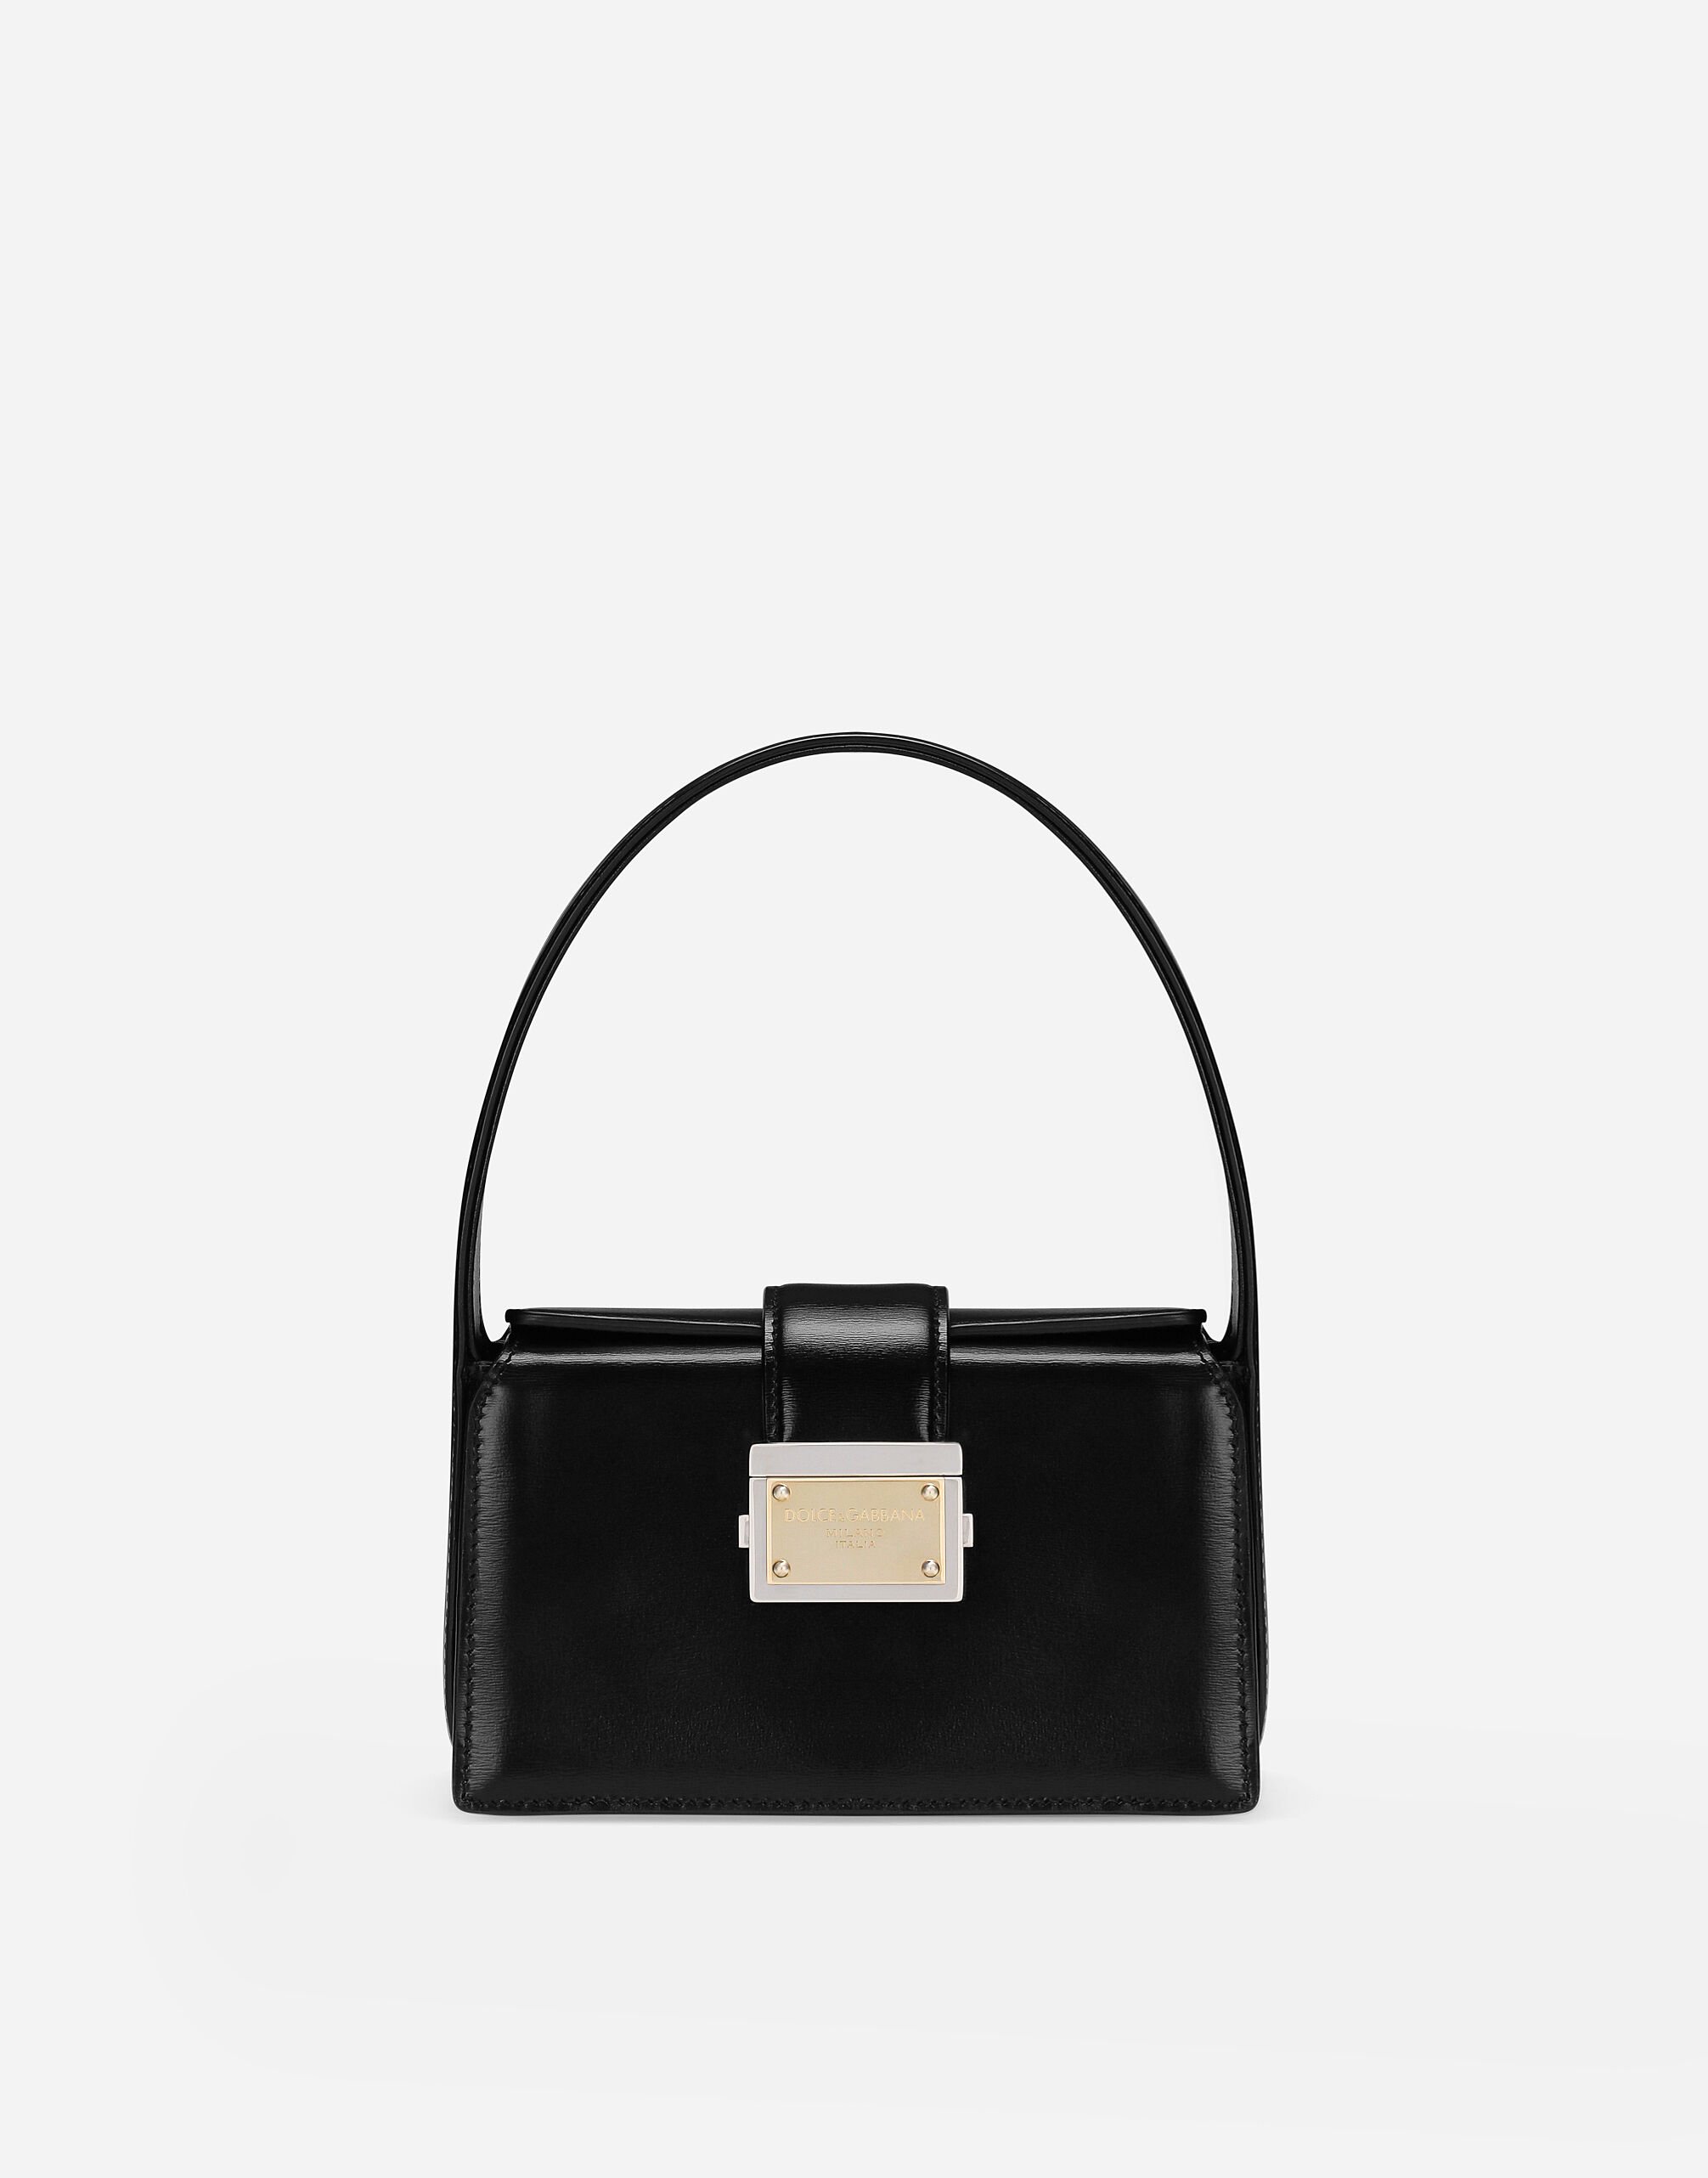 KIM DOLCE&GABBANA Small Sicily handbag in Black for Women | Dolce&Gabbana®